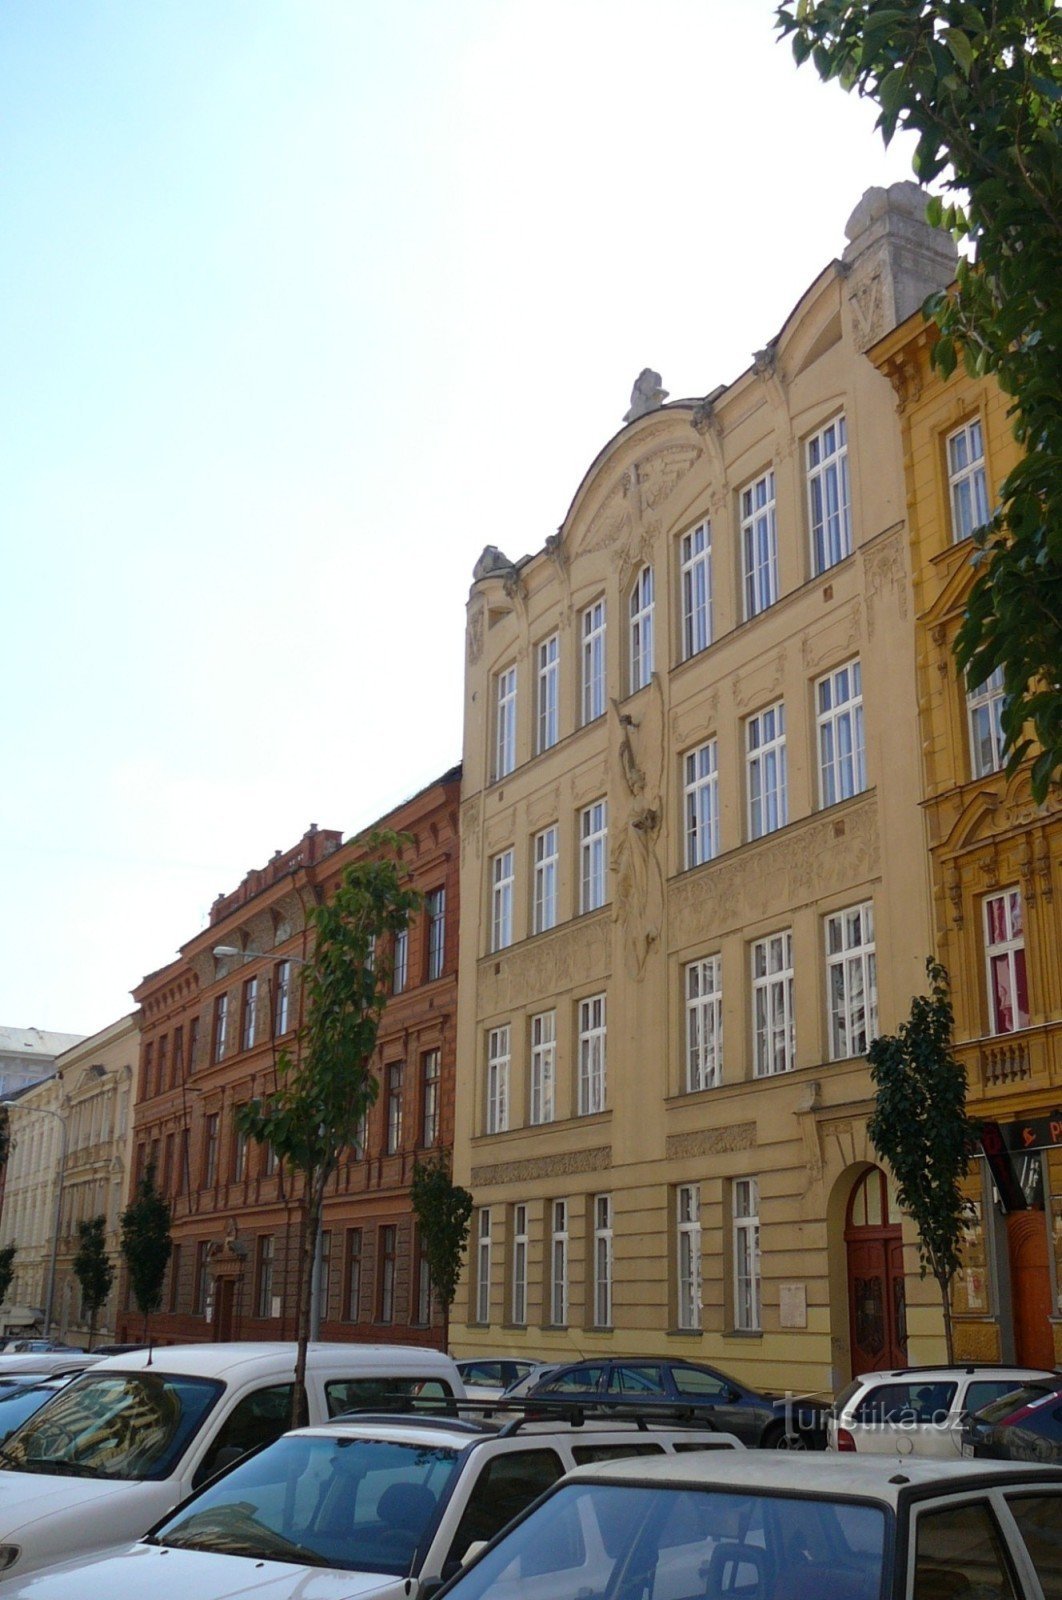 ユルコヴィッチがインテリアの一部をデザインしたJaselská通りにある両方の家